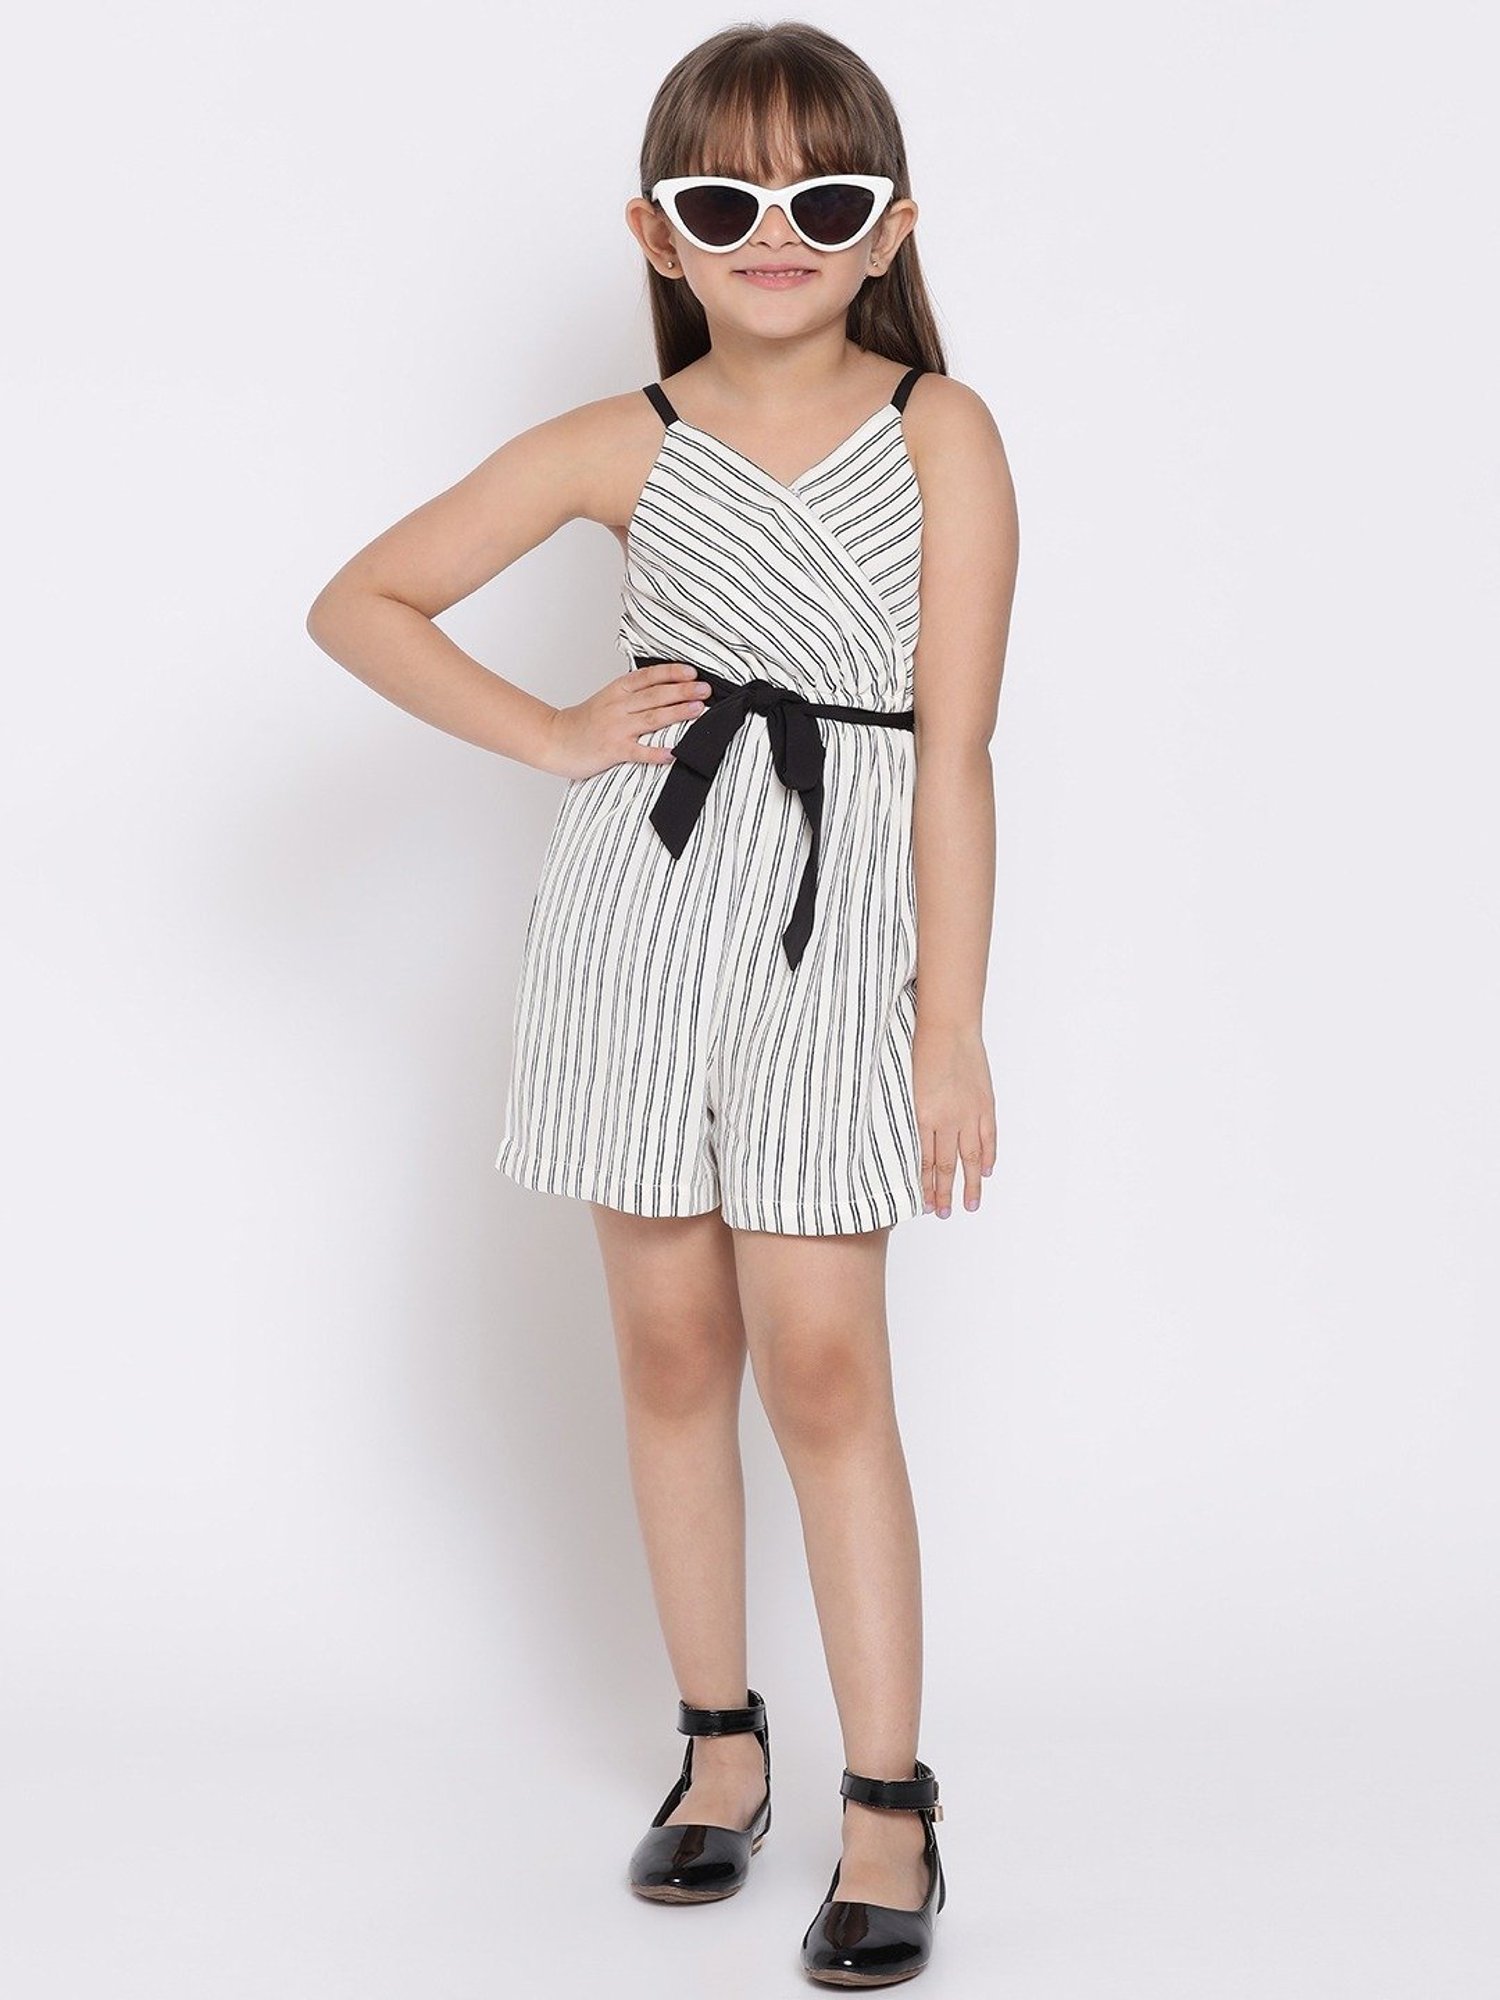 Buy Nauti Nati Kids White & Black Striped Jumpsuit for Girls Clothing  Online @ Tata CLiQ